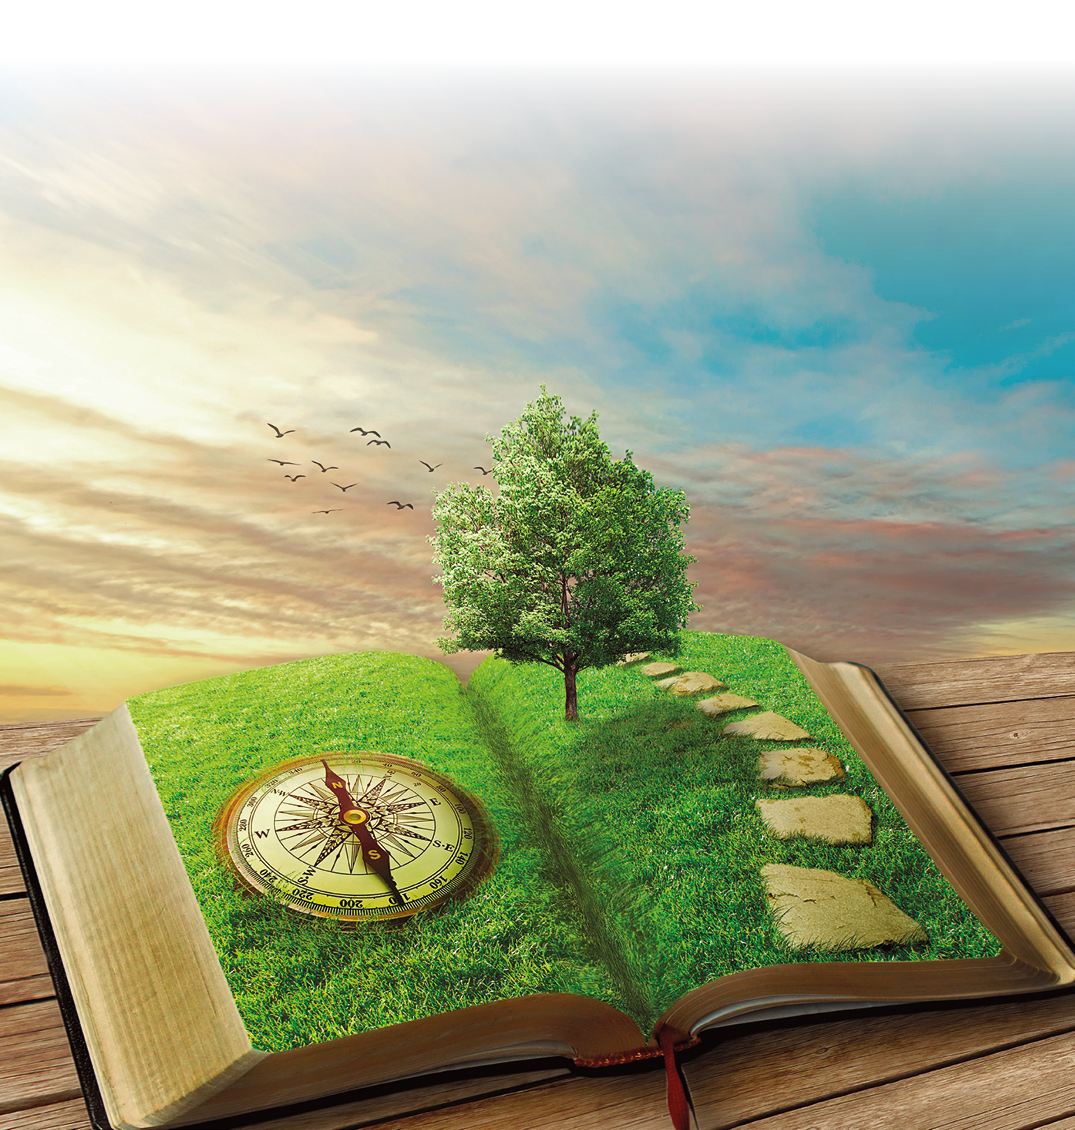 Composição de fotografias. Um livro aberto de cor bege-claro, com ilustração de grama verde. À esquerda, uma bússola redonda em marrom. À direita, caminho na vertical e uma árvore de folhas em verde. Na parte superior, céu em azul-claro, com nuvens espalhadas.